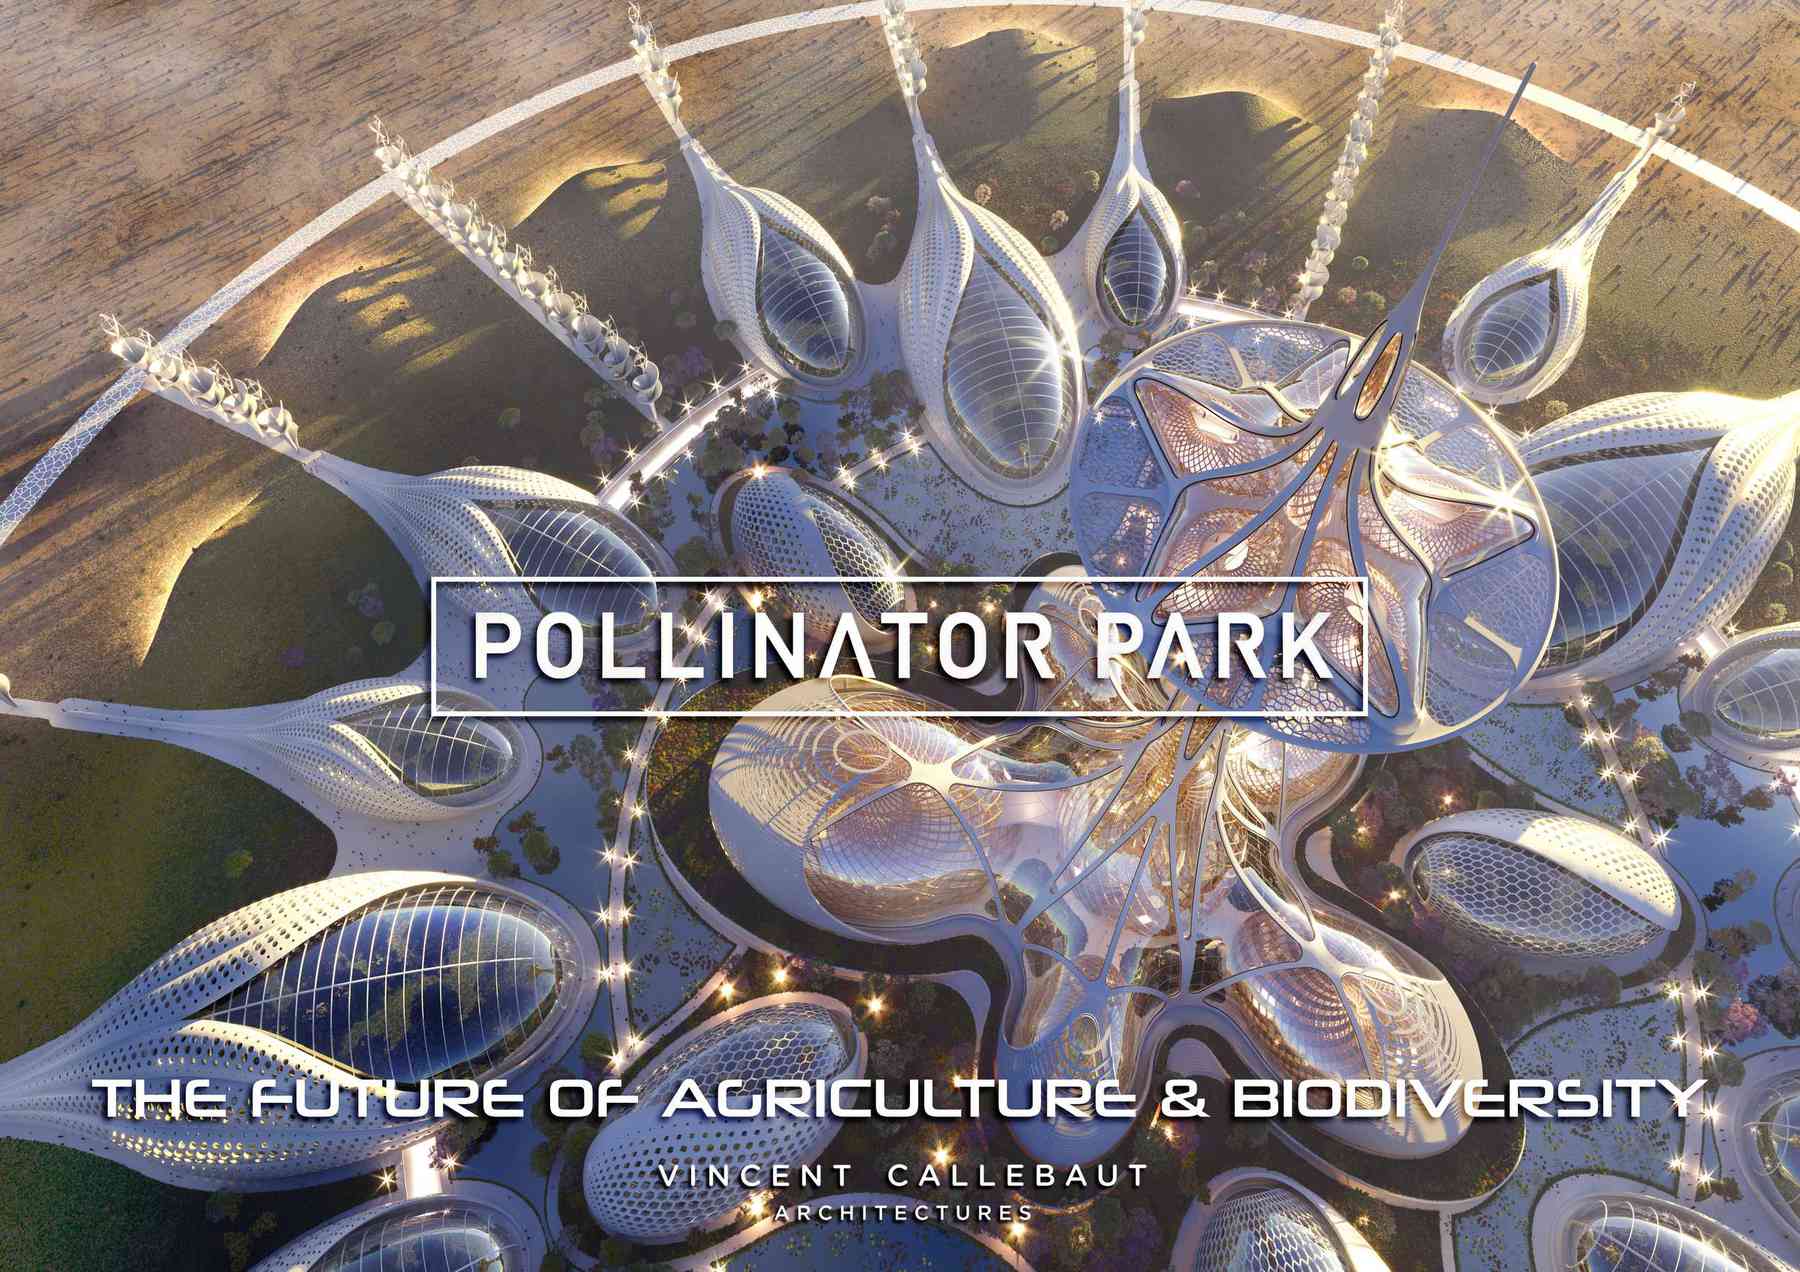 210323_pollinatorpark-polinnatorpark_pl001